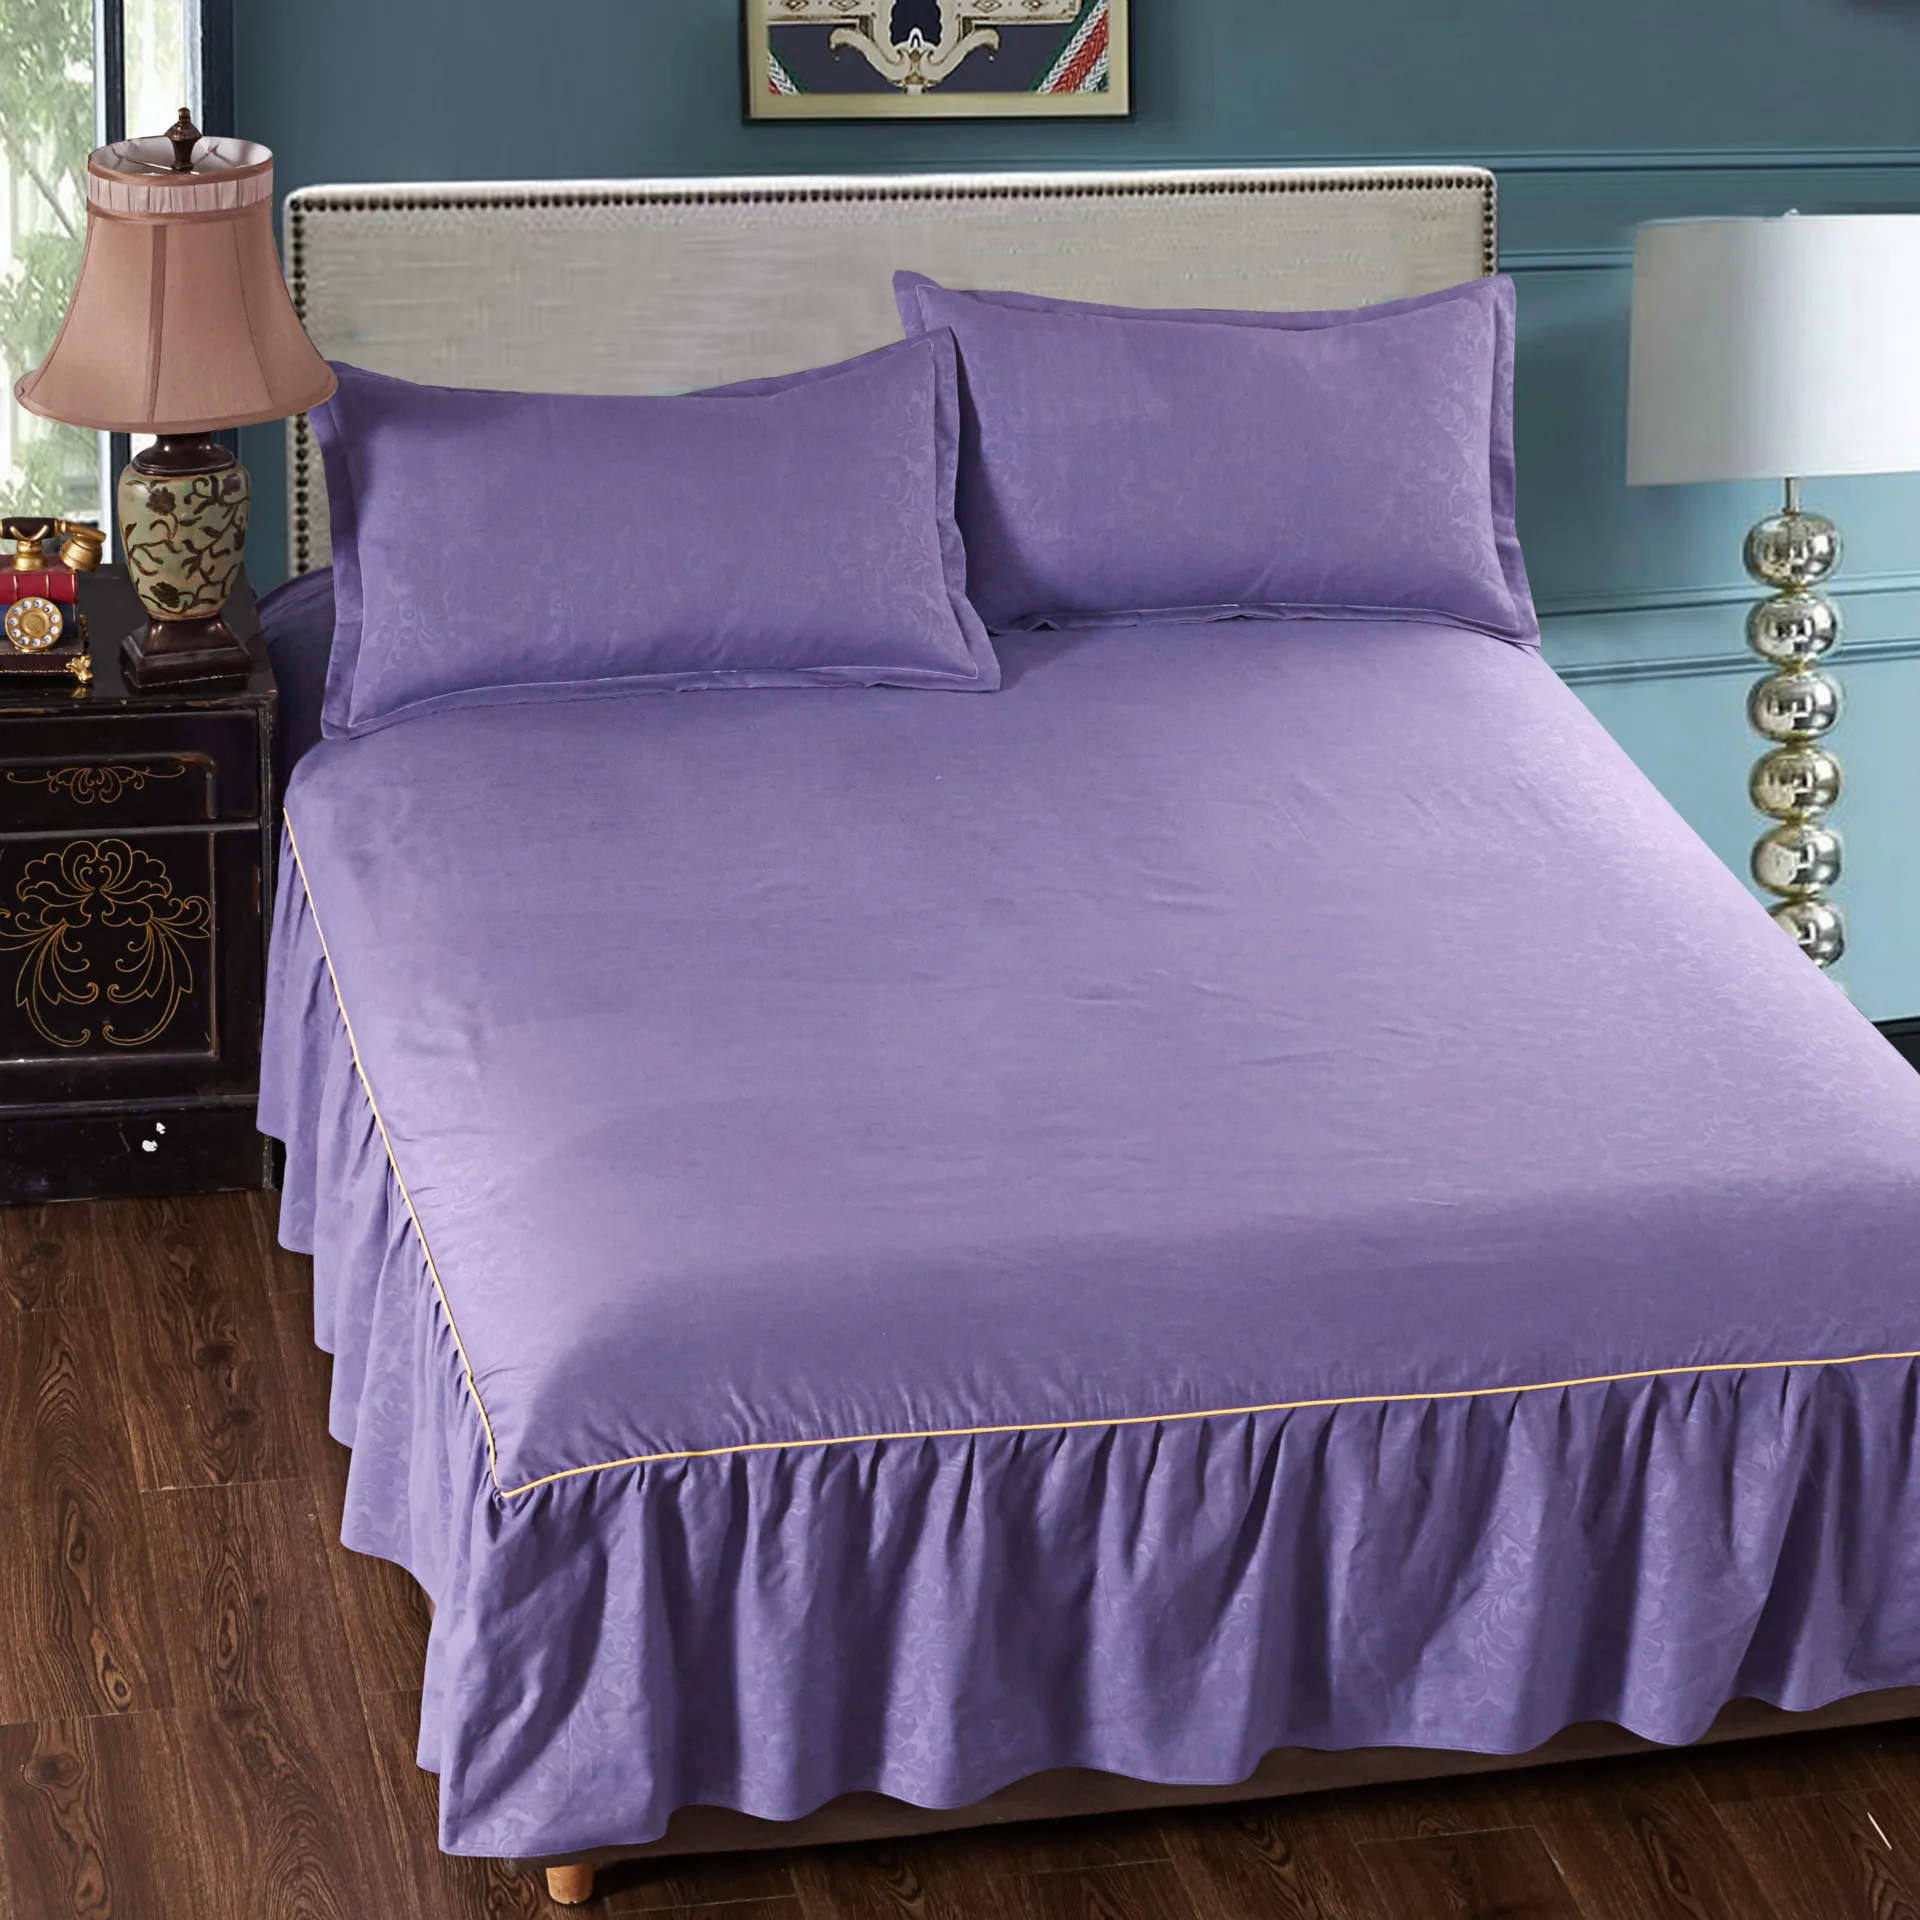 Хаки полиэстер хлопок кровать юбки общежития ST37 Матрас протектор удобные простыни покрывало постельные принадлежности Чехлы для дома отель - Цвет: Lavender